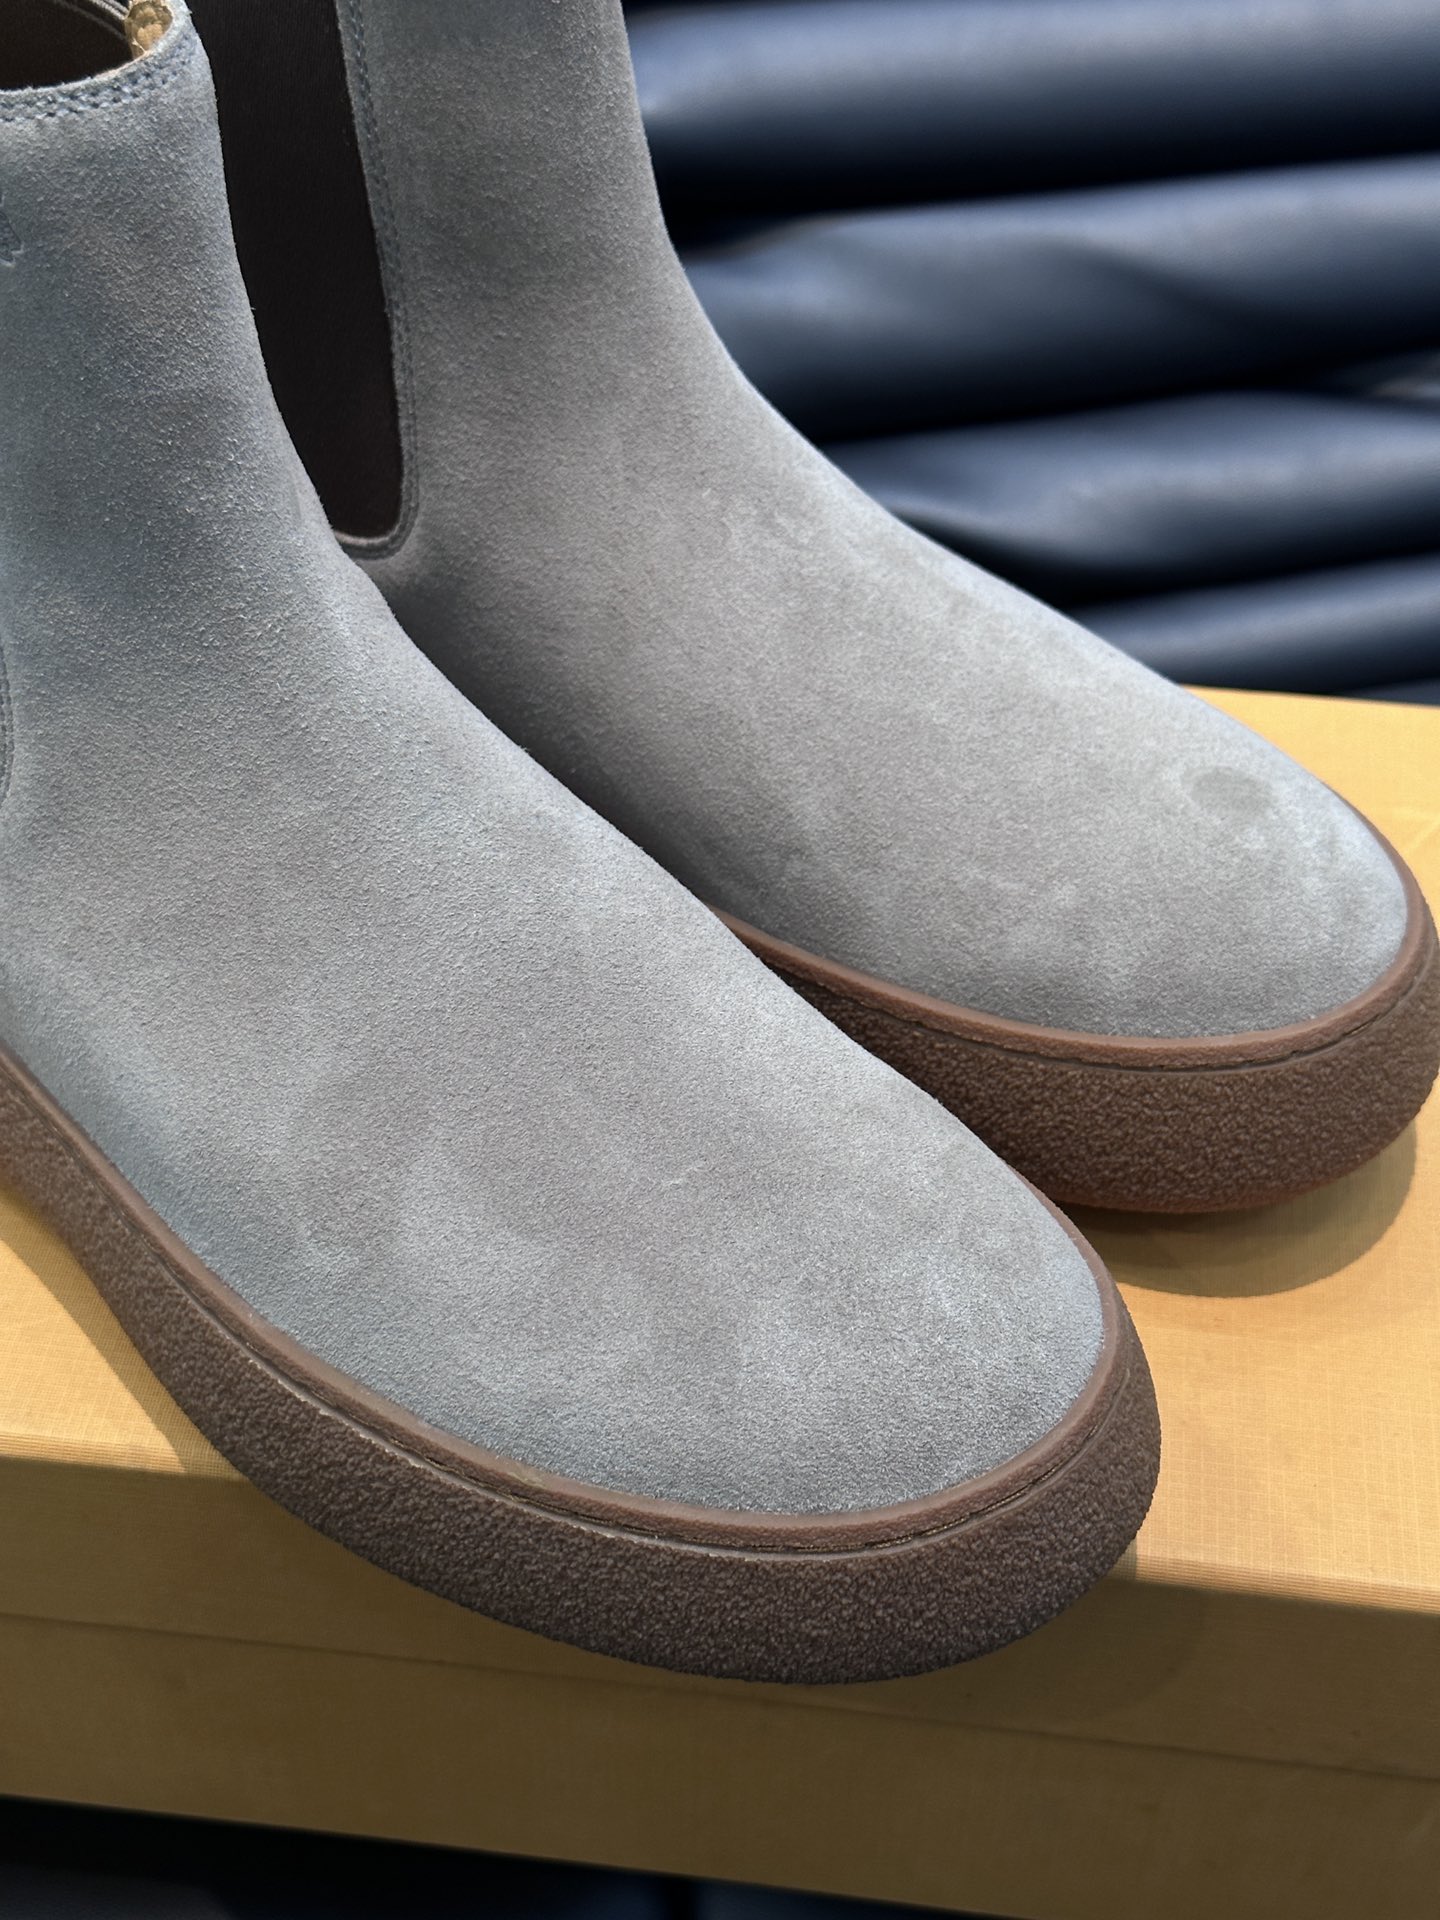 TODS/托德斯新款秋冬男士高帮靴简约的厚底设计吸引眼球采用小牛皮和绒面牛皮革制成现代风格演绎经典鞋款橡